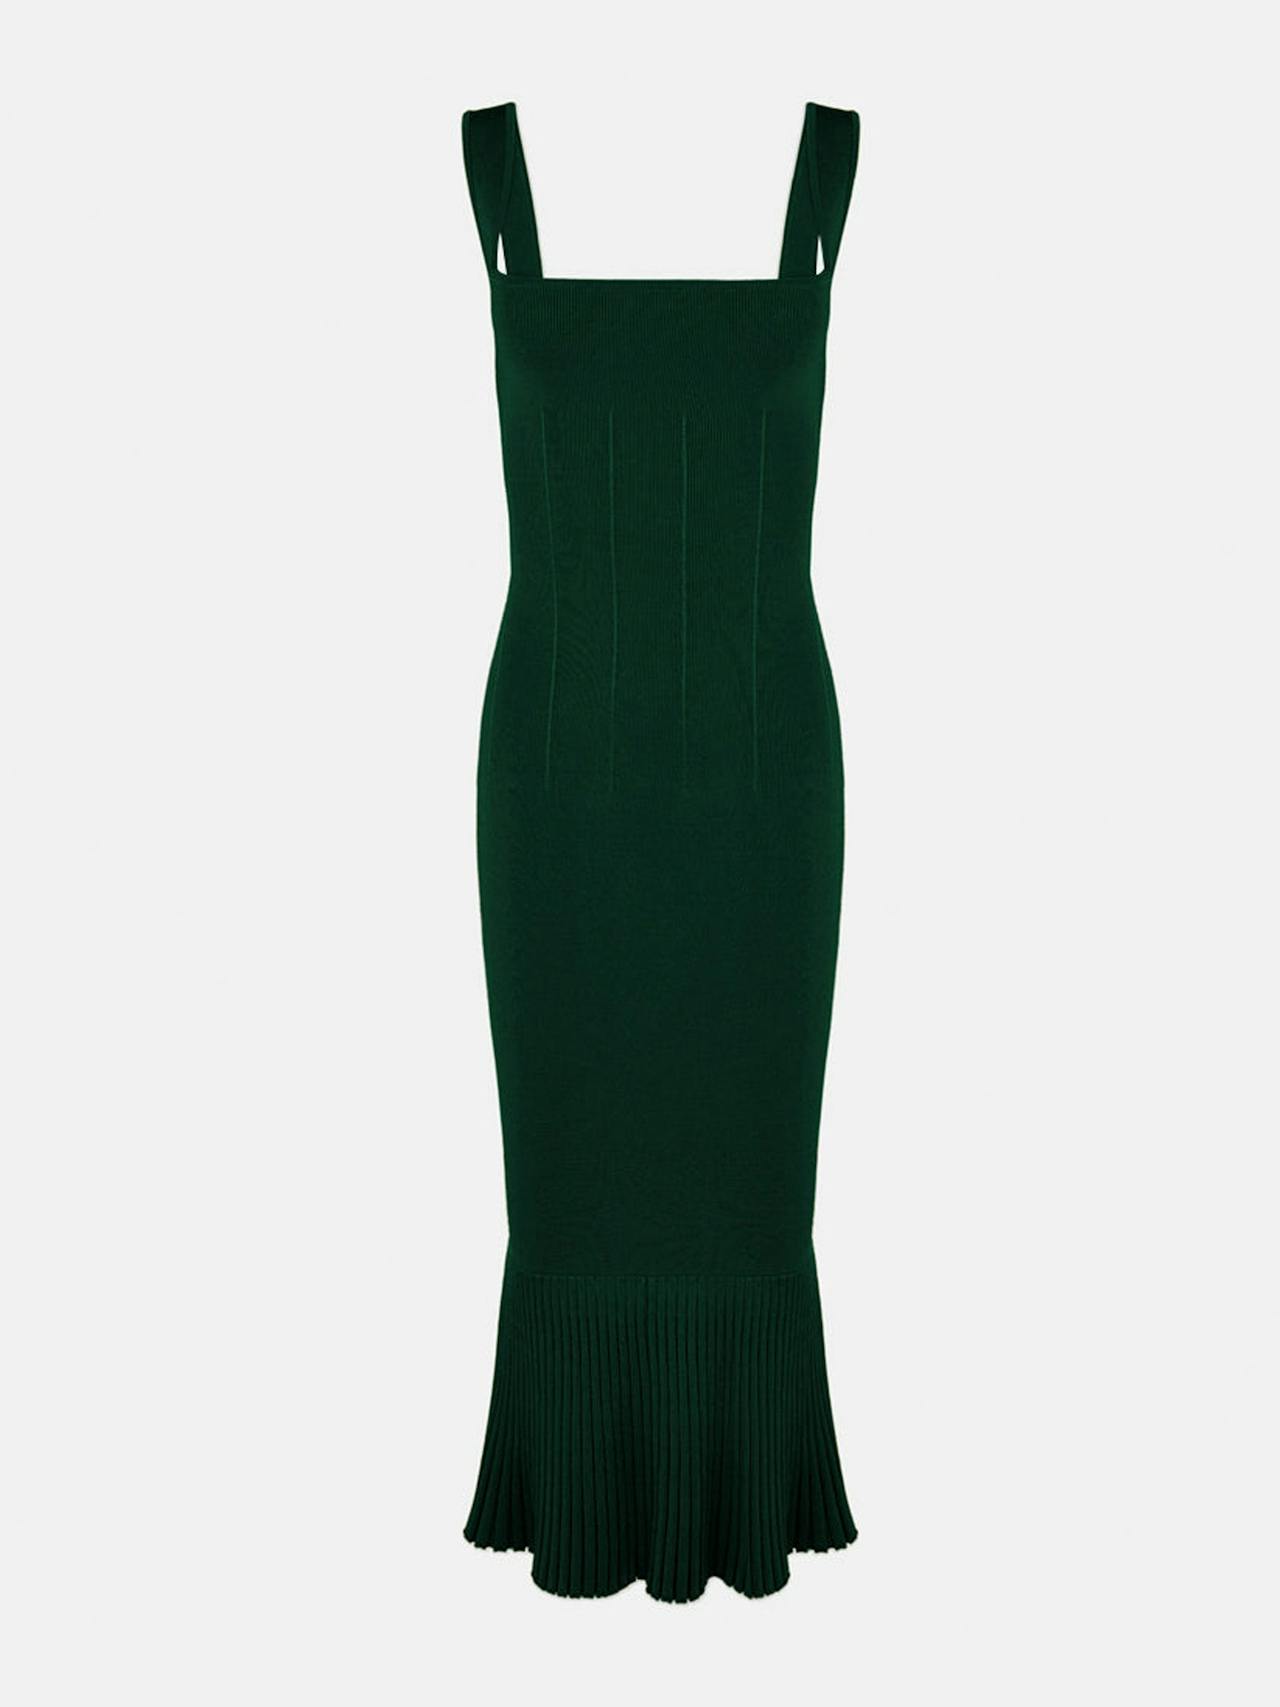 Evergreen knit Atalanta dress